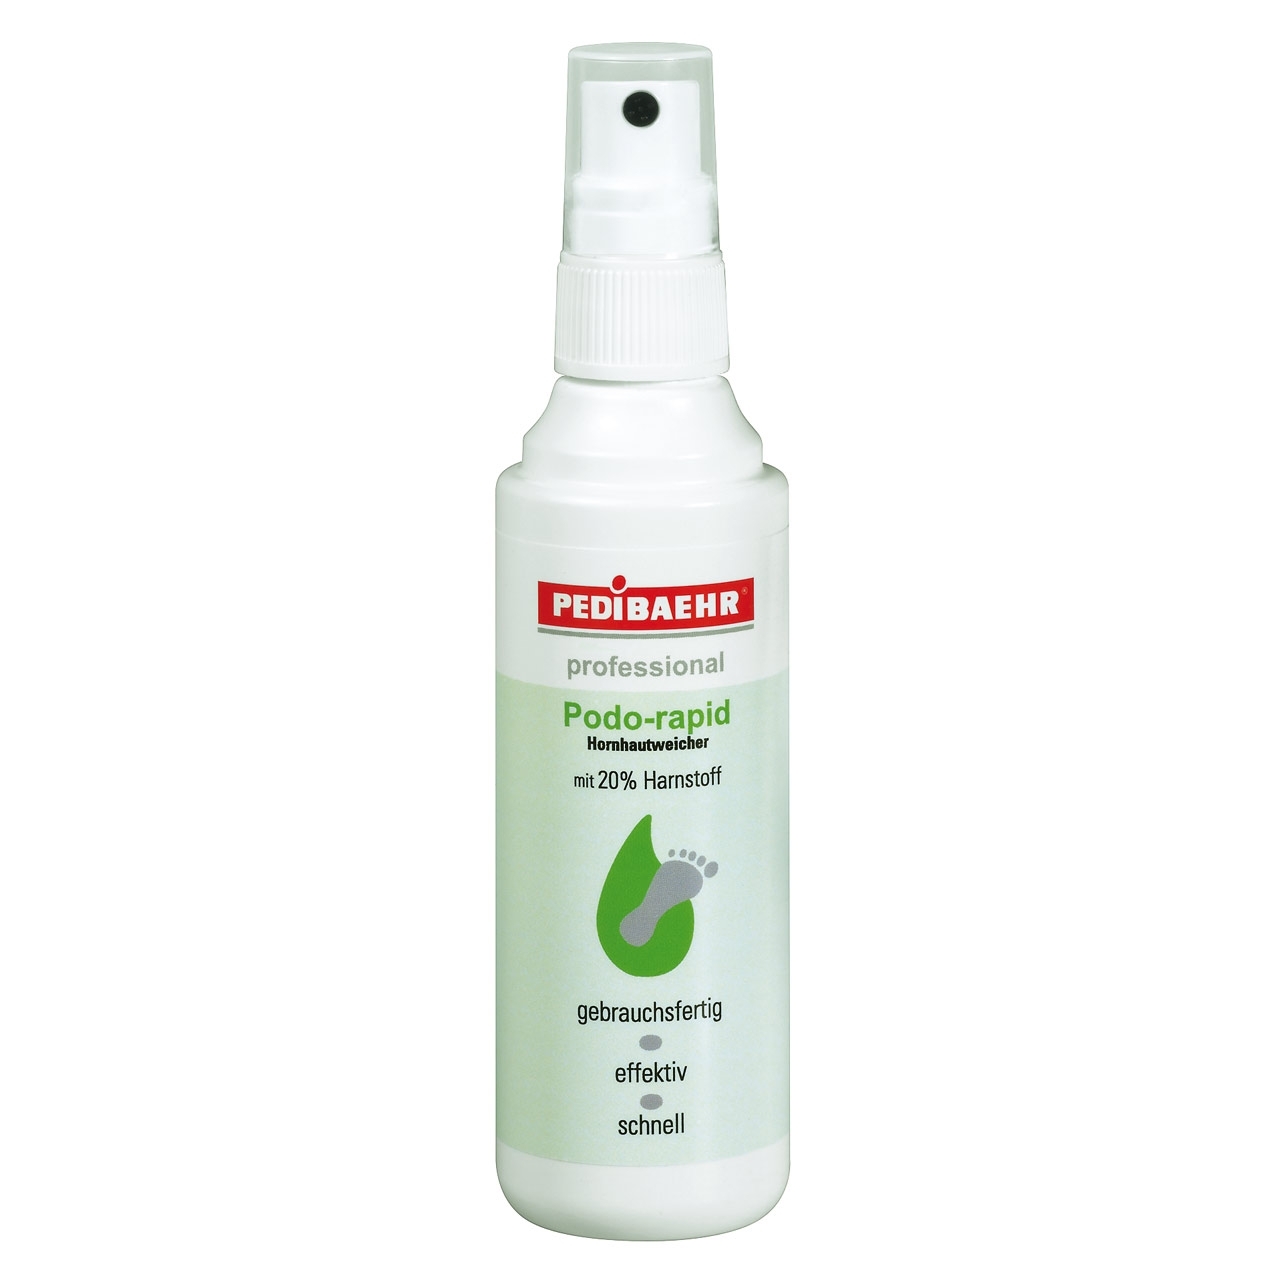 PEDIBAEHR - Podo-rapid Hornhauterweicher mit 20 % Harnstoff, 100 ml, Sprayflasche